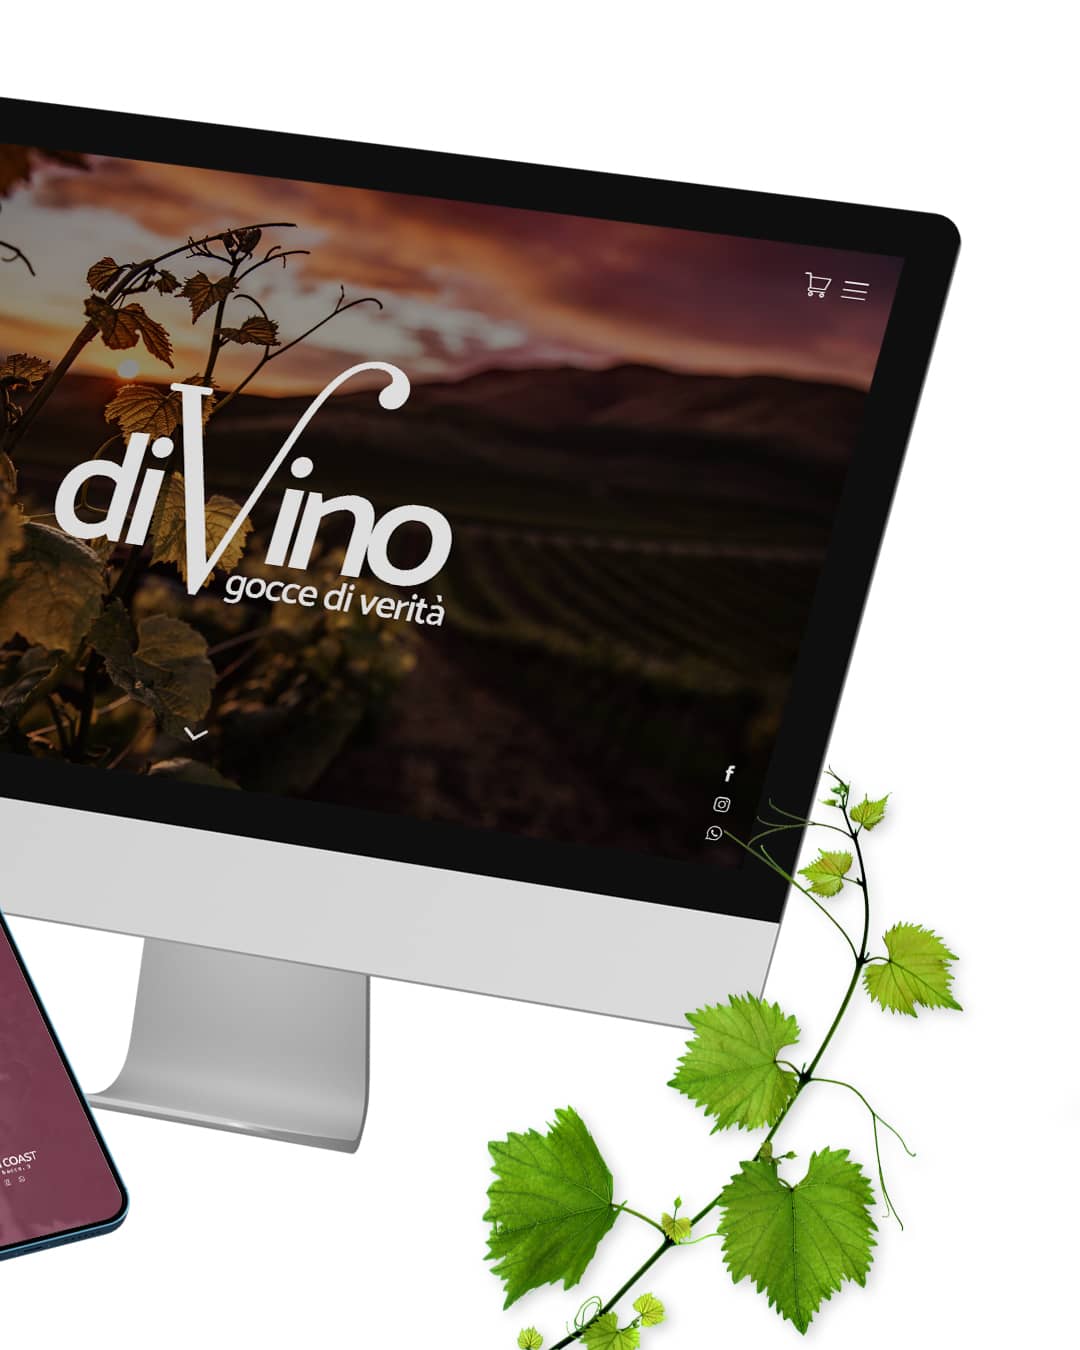 divino casa vinicola, brand design, visual design, identità visiva, sito web, logo, daniele barone